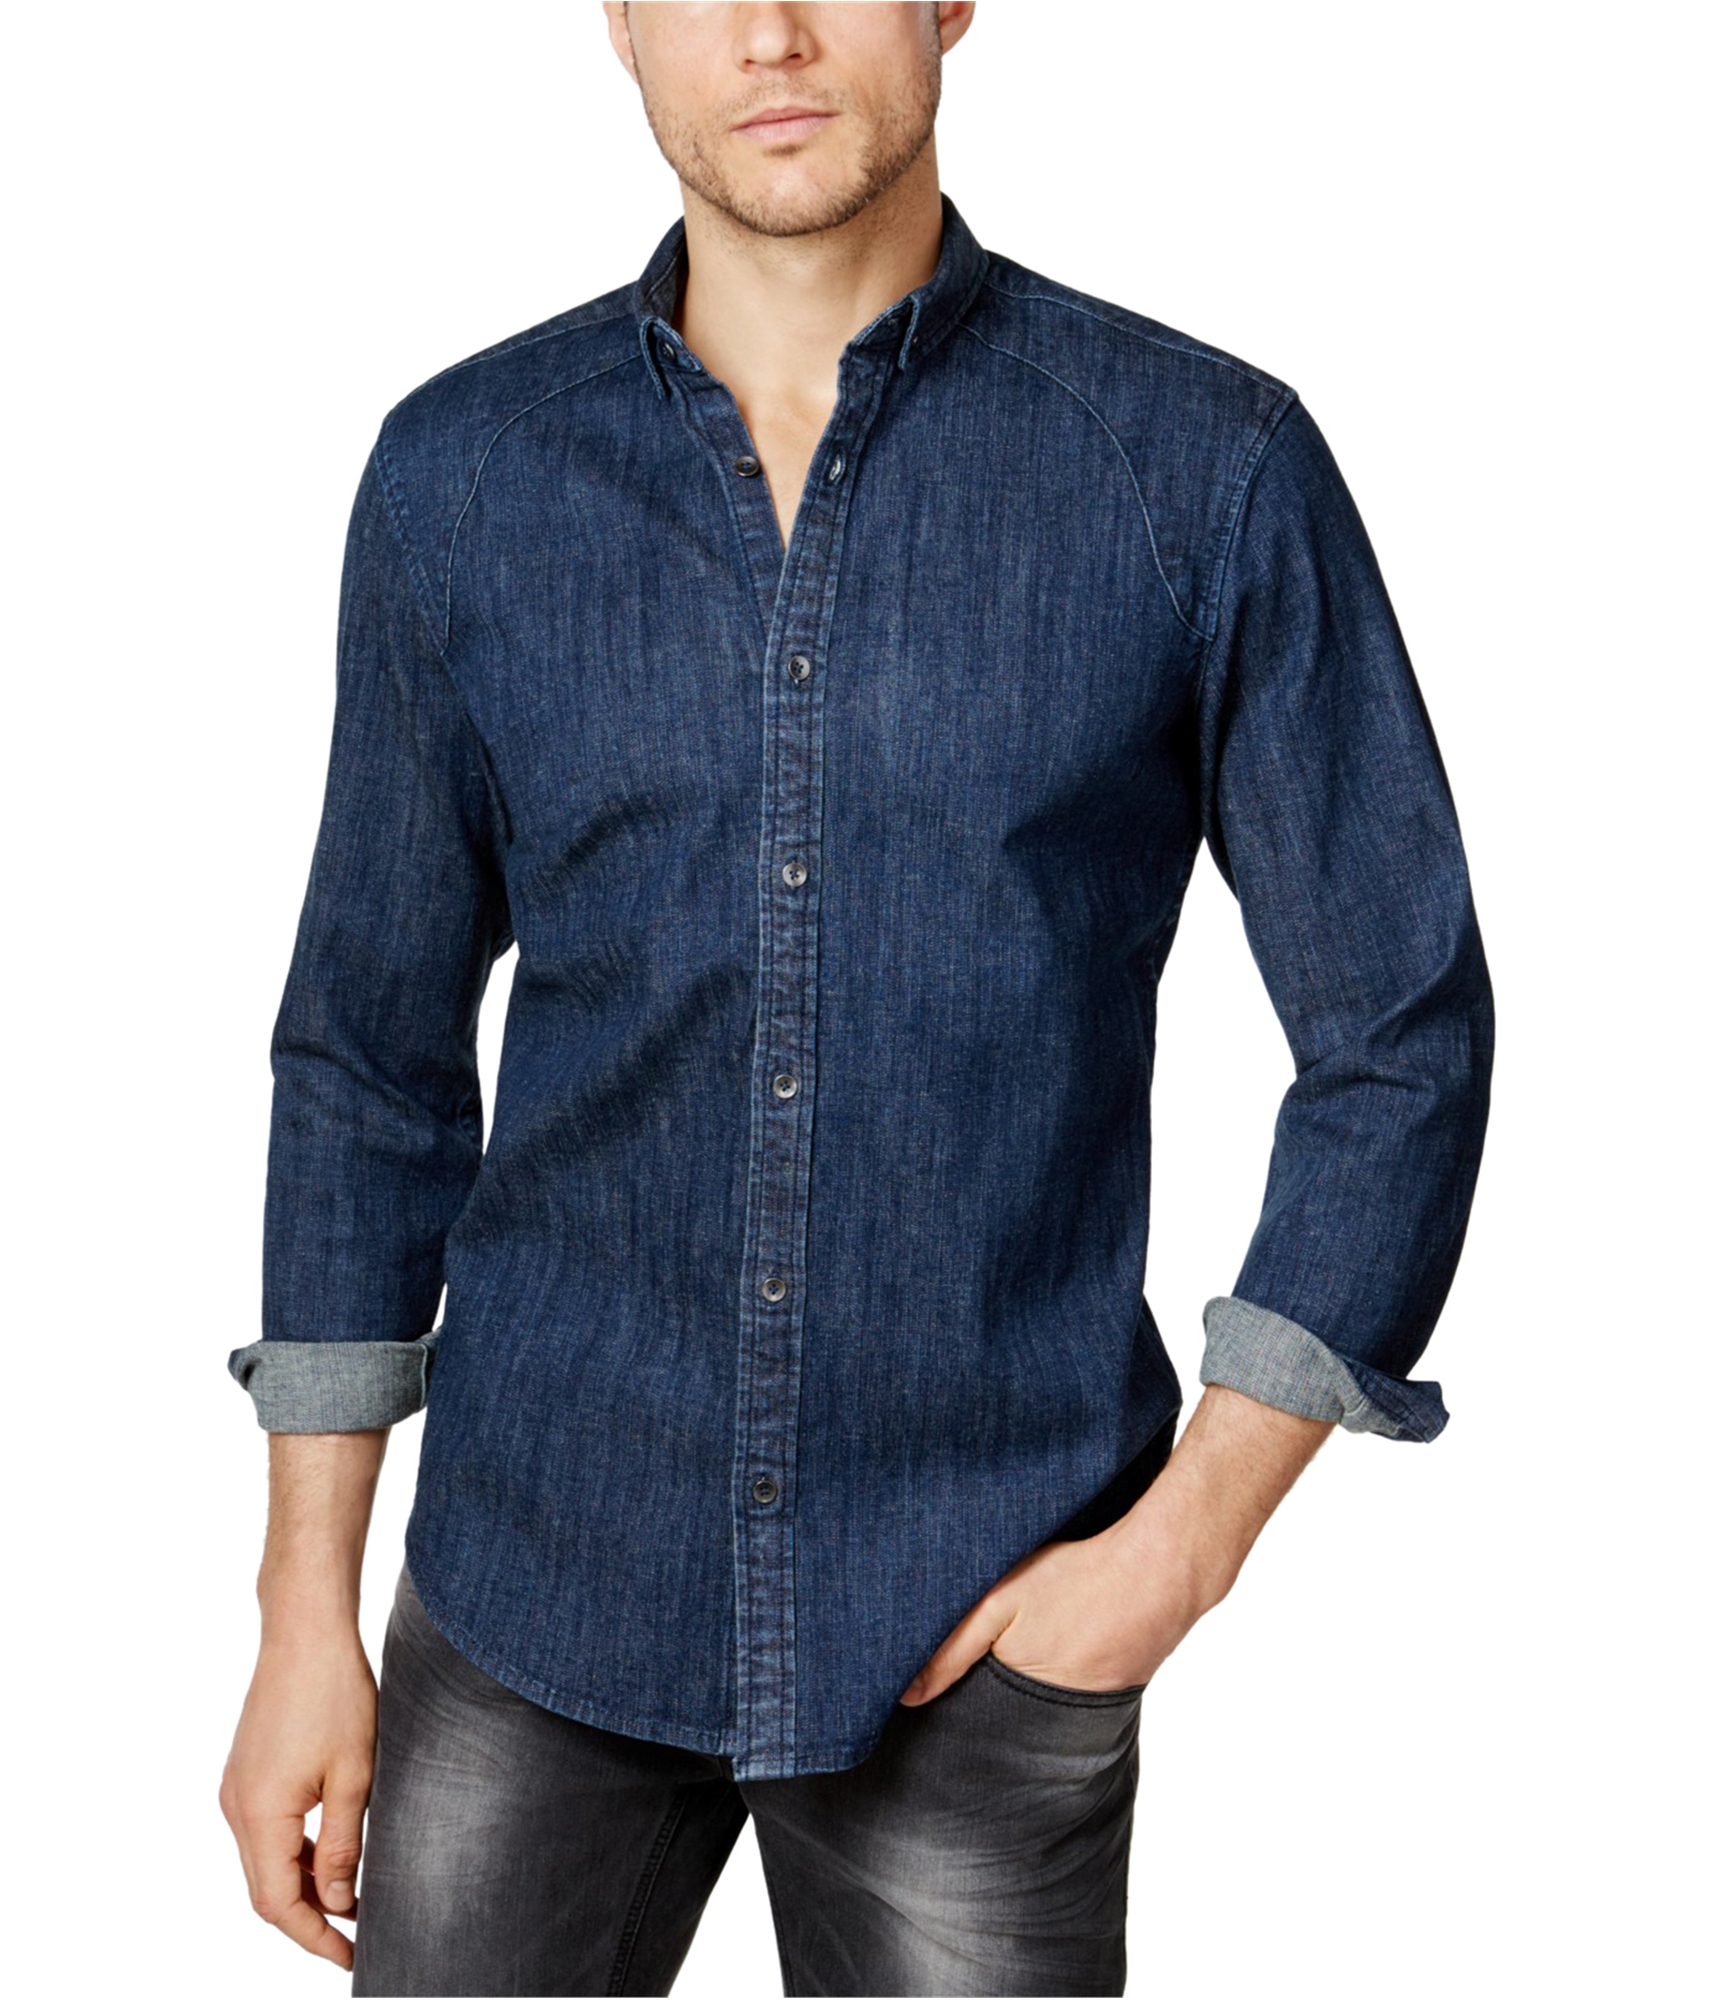 Man-wearing-denim-button-up-shirt